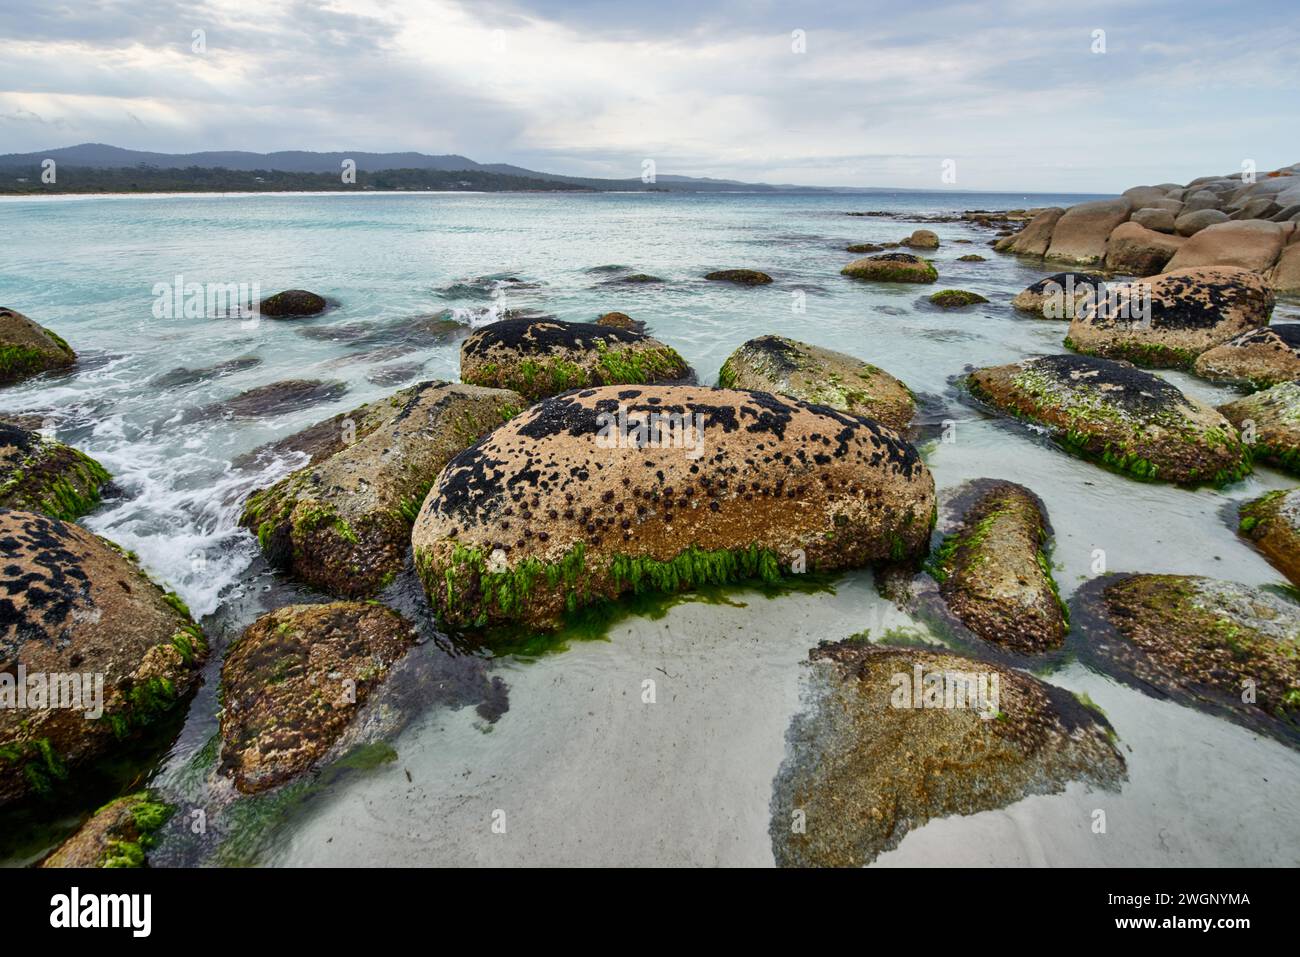 Roches couvertes de mousse et algues dans les eaux peu profondes d'une mer ouverte Banque D'Images